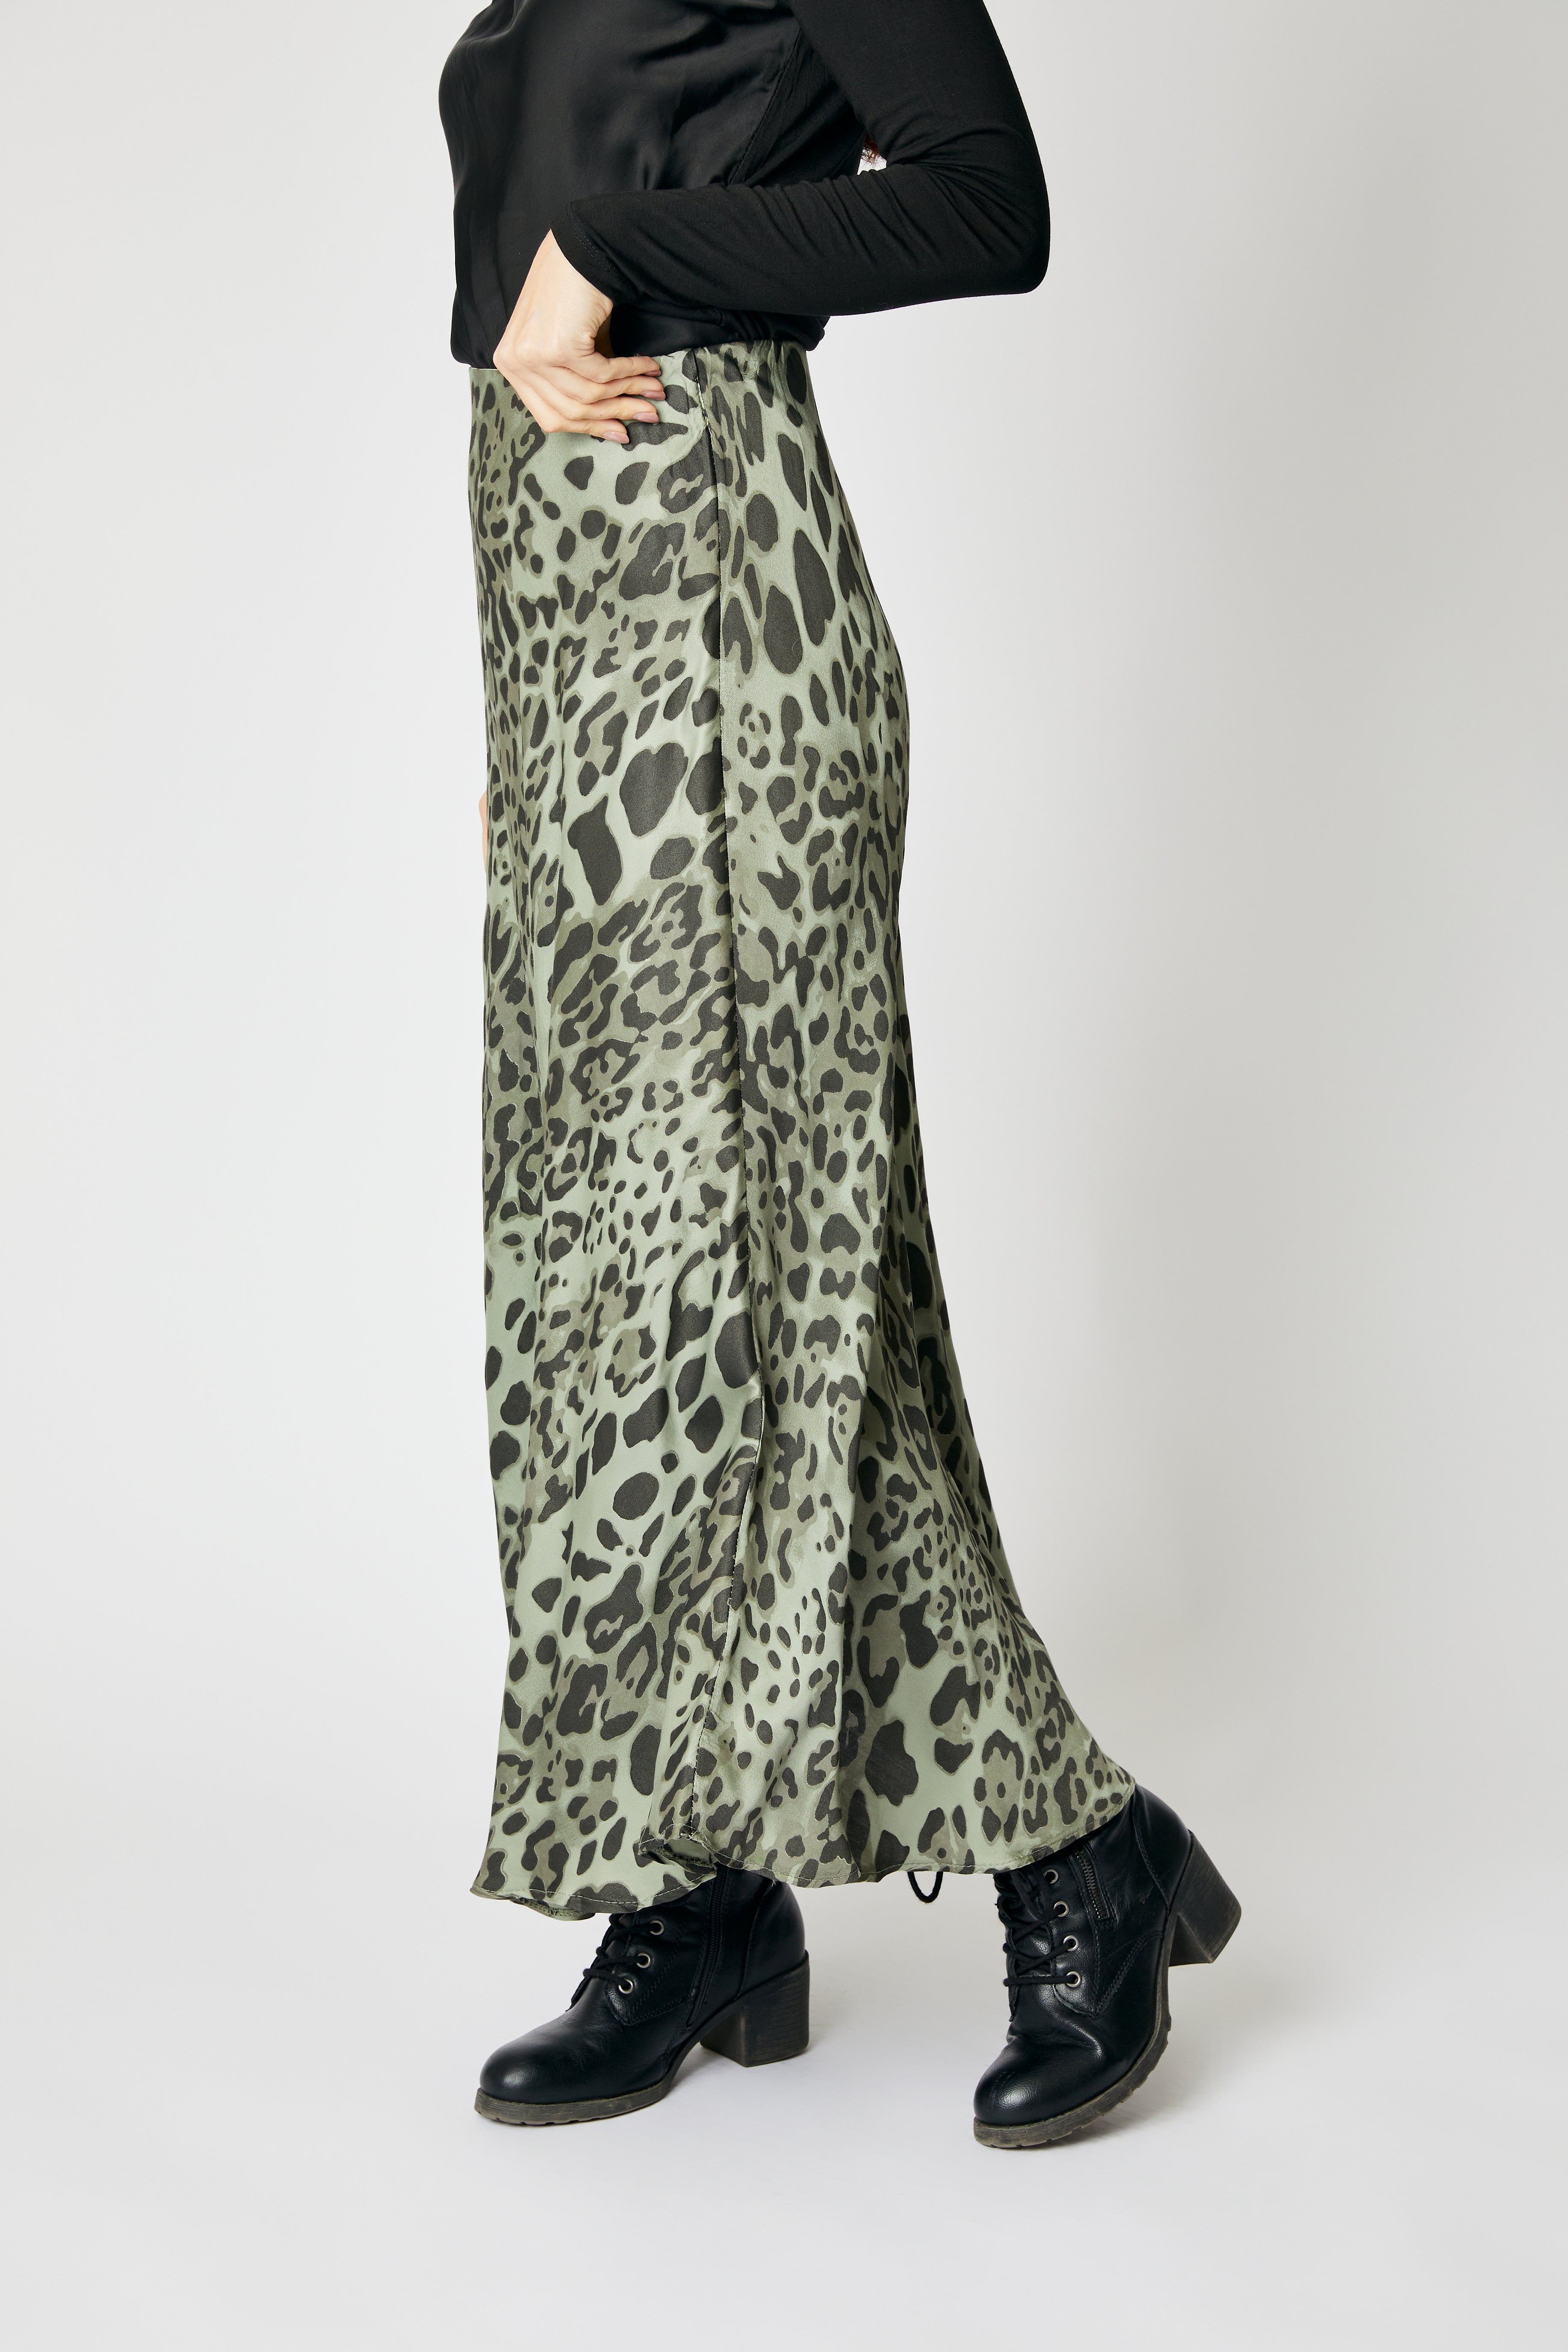 Bias Cut Leopard Skirt